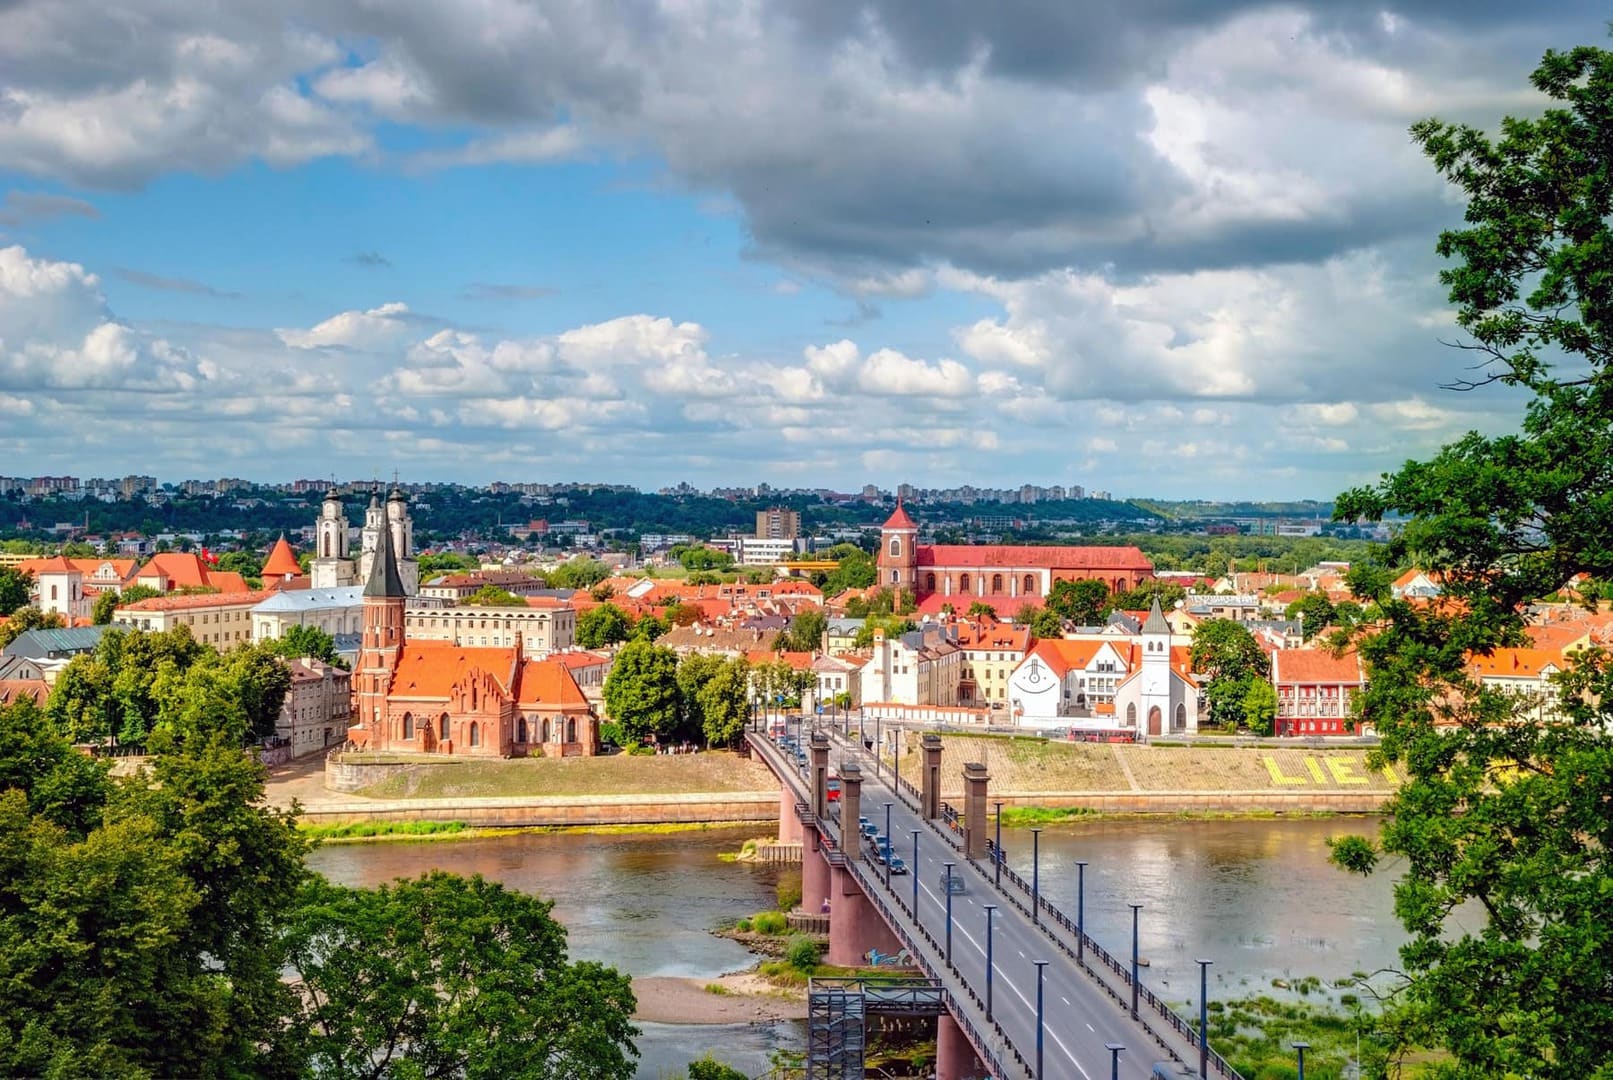 Radreise Baltikum Litauen Polen Klaipeda nach Warschau - Kaunas